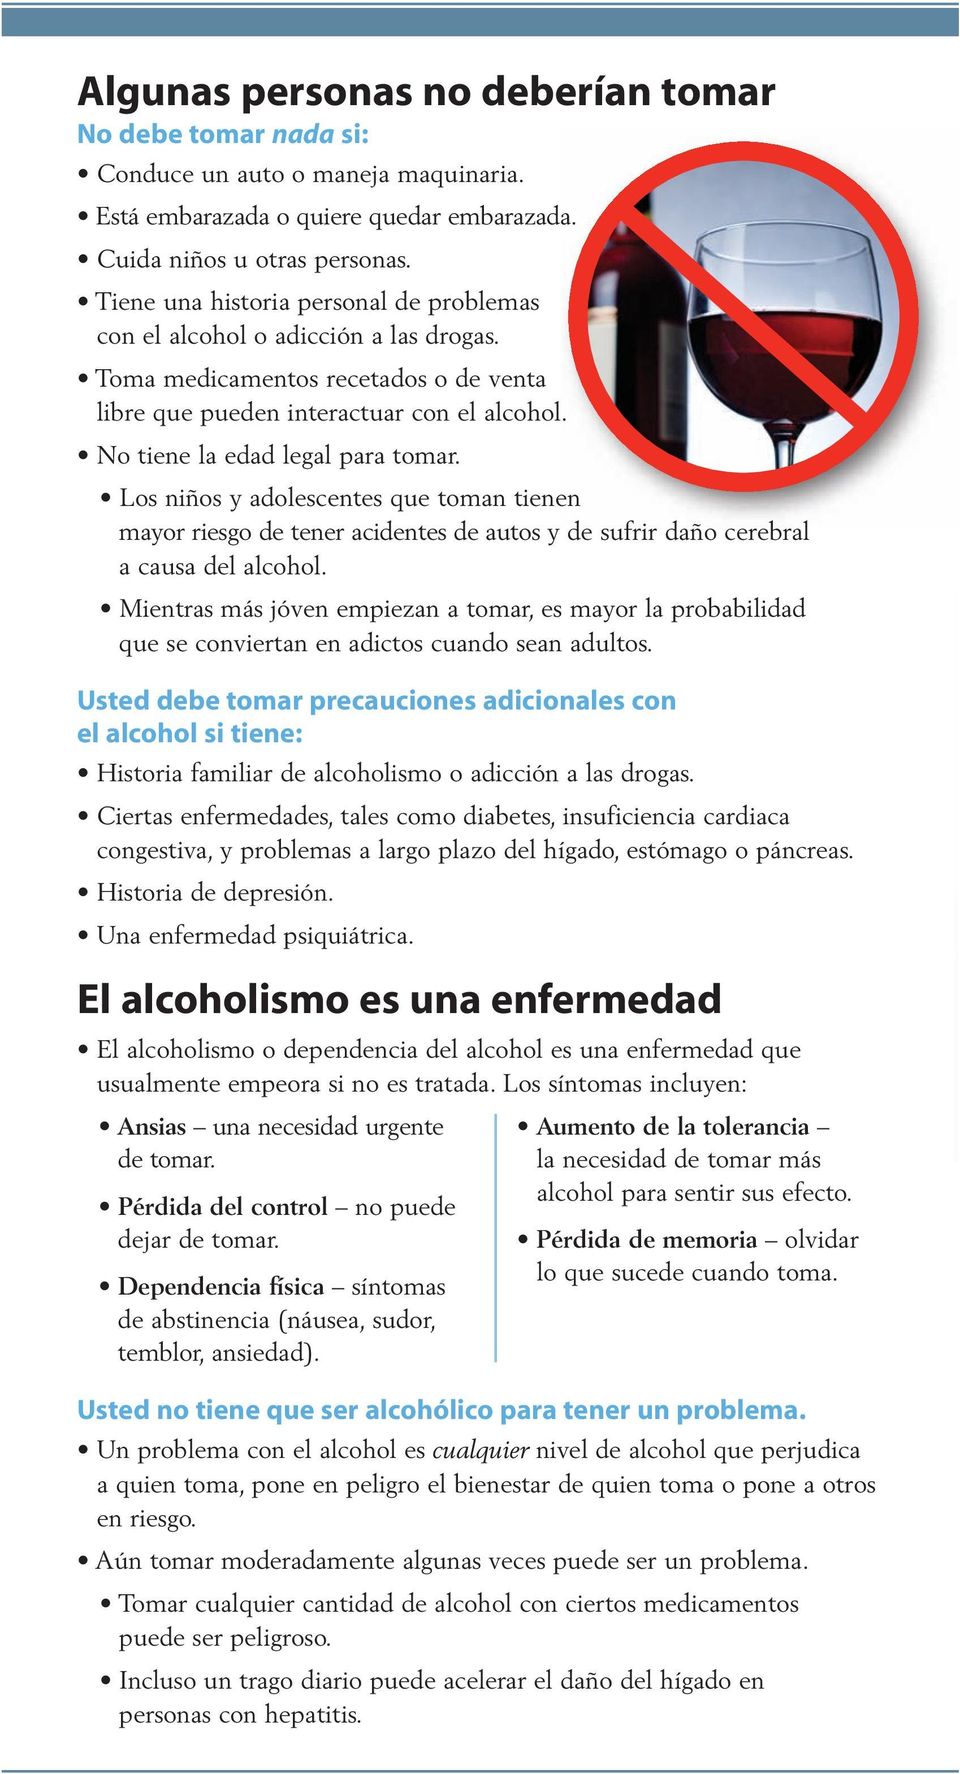 Los niños y adolescentes que toman tienen mayor riesgo de tener acidentes de autos y de sufrir daño cerebral a causa del alcohol.